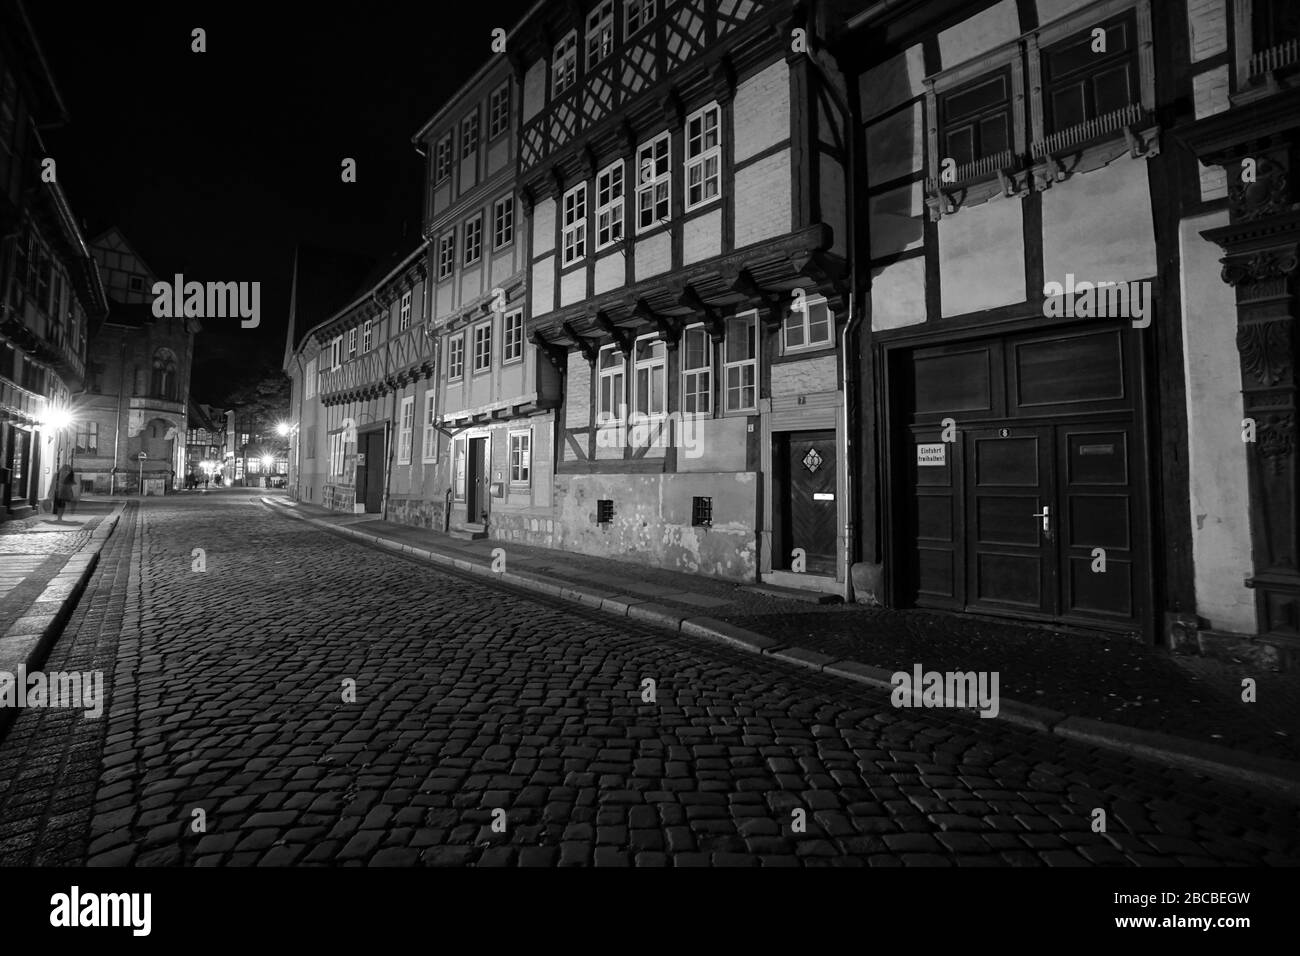 Image spectaculaire en noir et blanc d'une voie pavée entre maisons à colombages la nuit sur le site du patrimoine mondial de l'UNESCO, Quedlinburg Banque D'Images